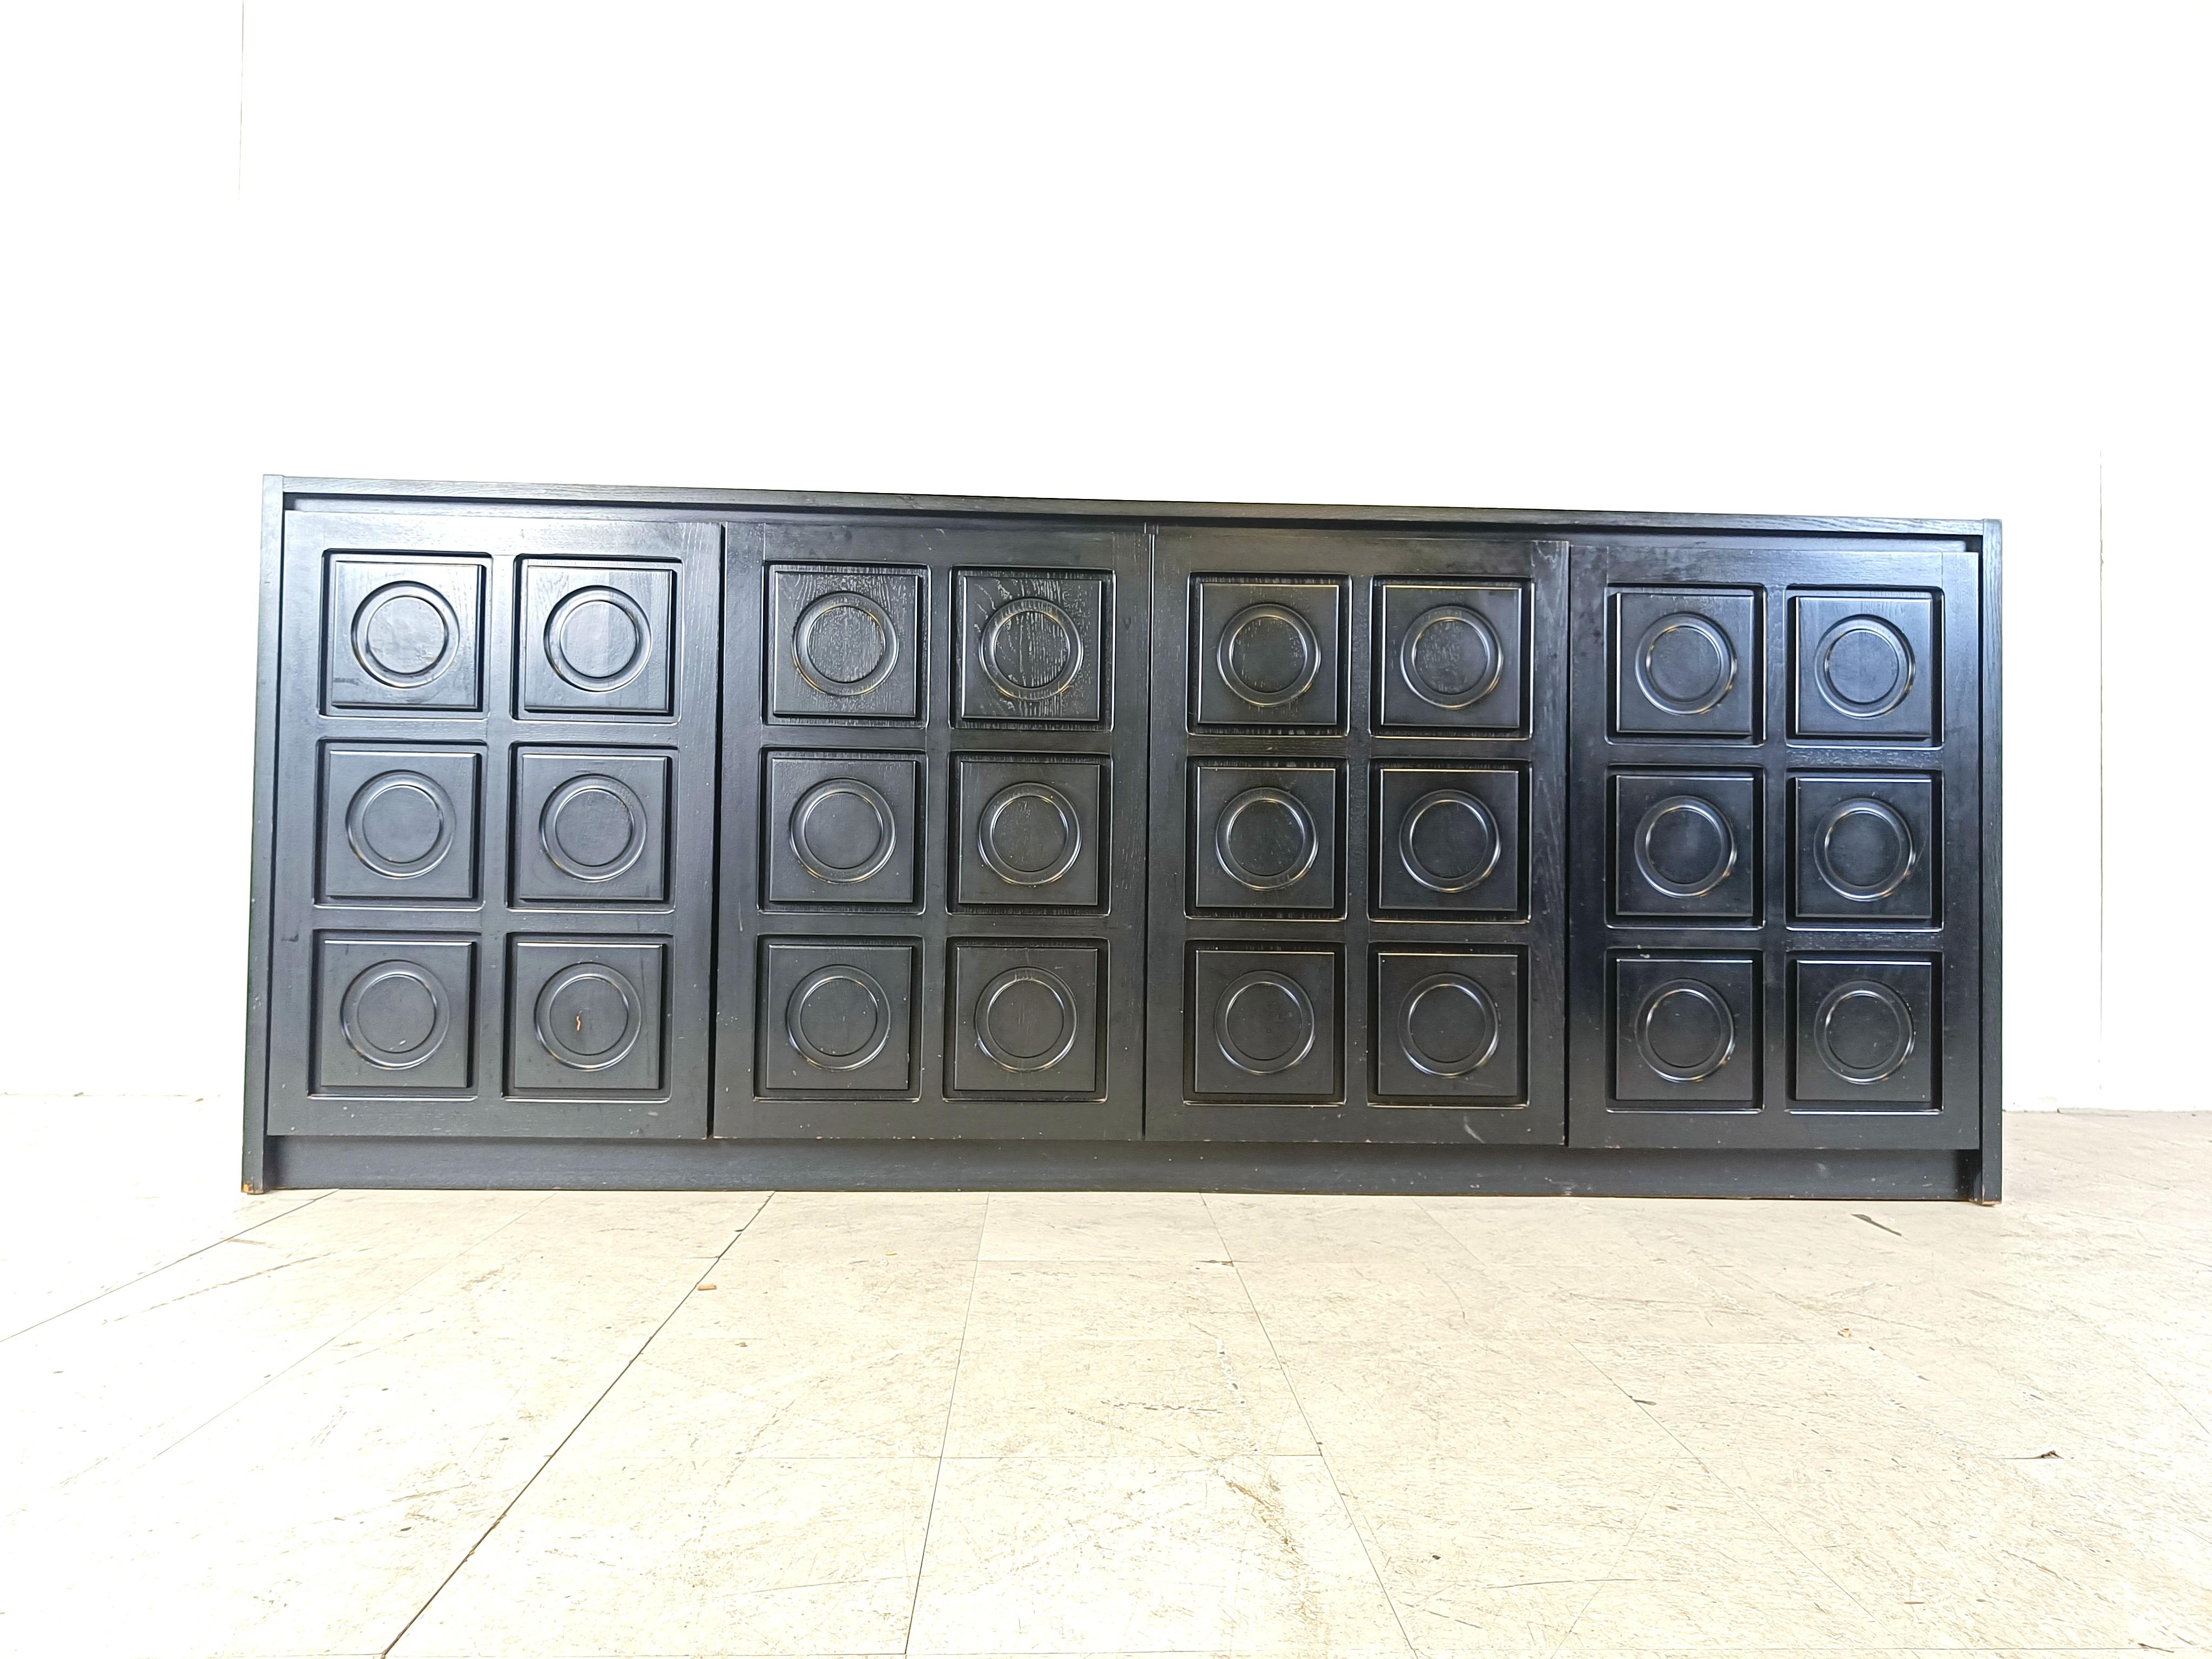 Ebonisierte schwarze brutalistische Kredenz mit 4 grafischen Türen.

Schönes zeitloses Design.

Sehr guter Zustand.

1970er Jahre - Belgien

Abmessungen:

Länge: 250cm/98.42